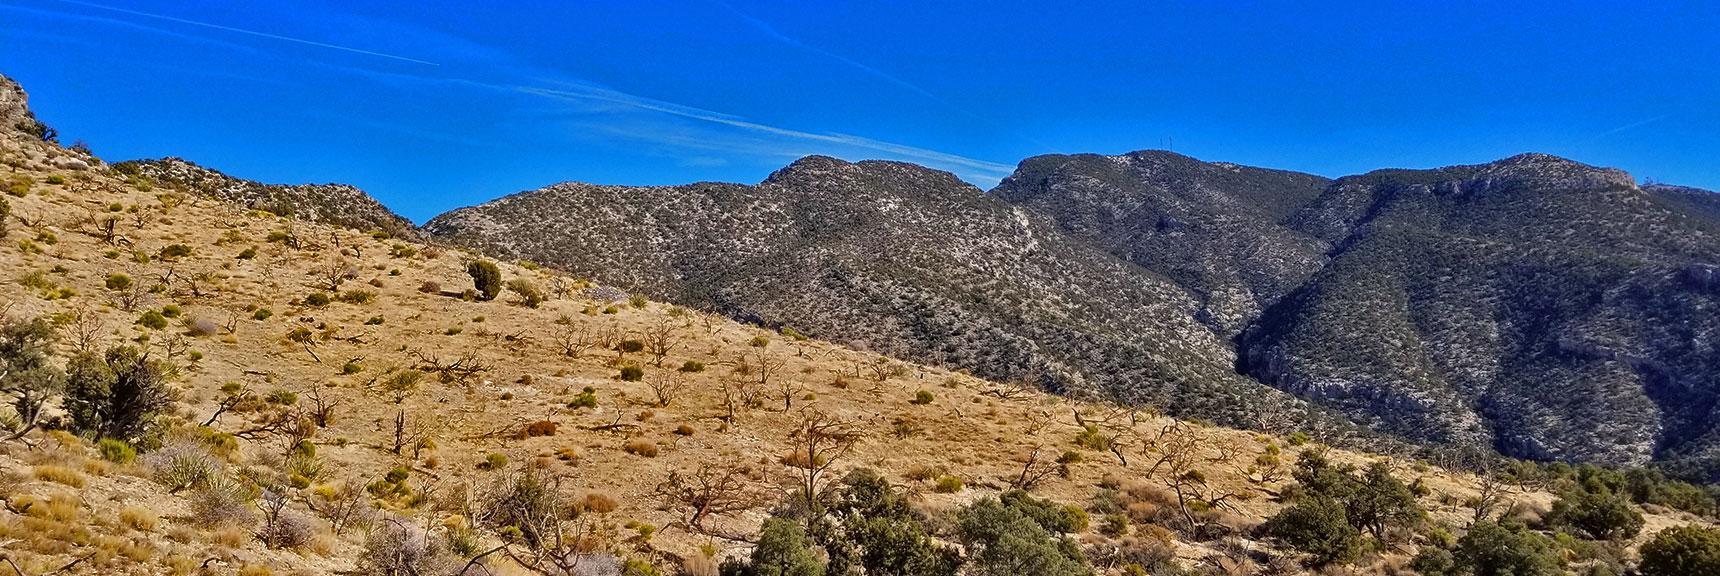 Western Cliffs Ridgeline | Potosi Mountain | Spring Mountains, Nevada